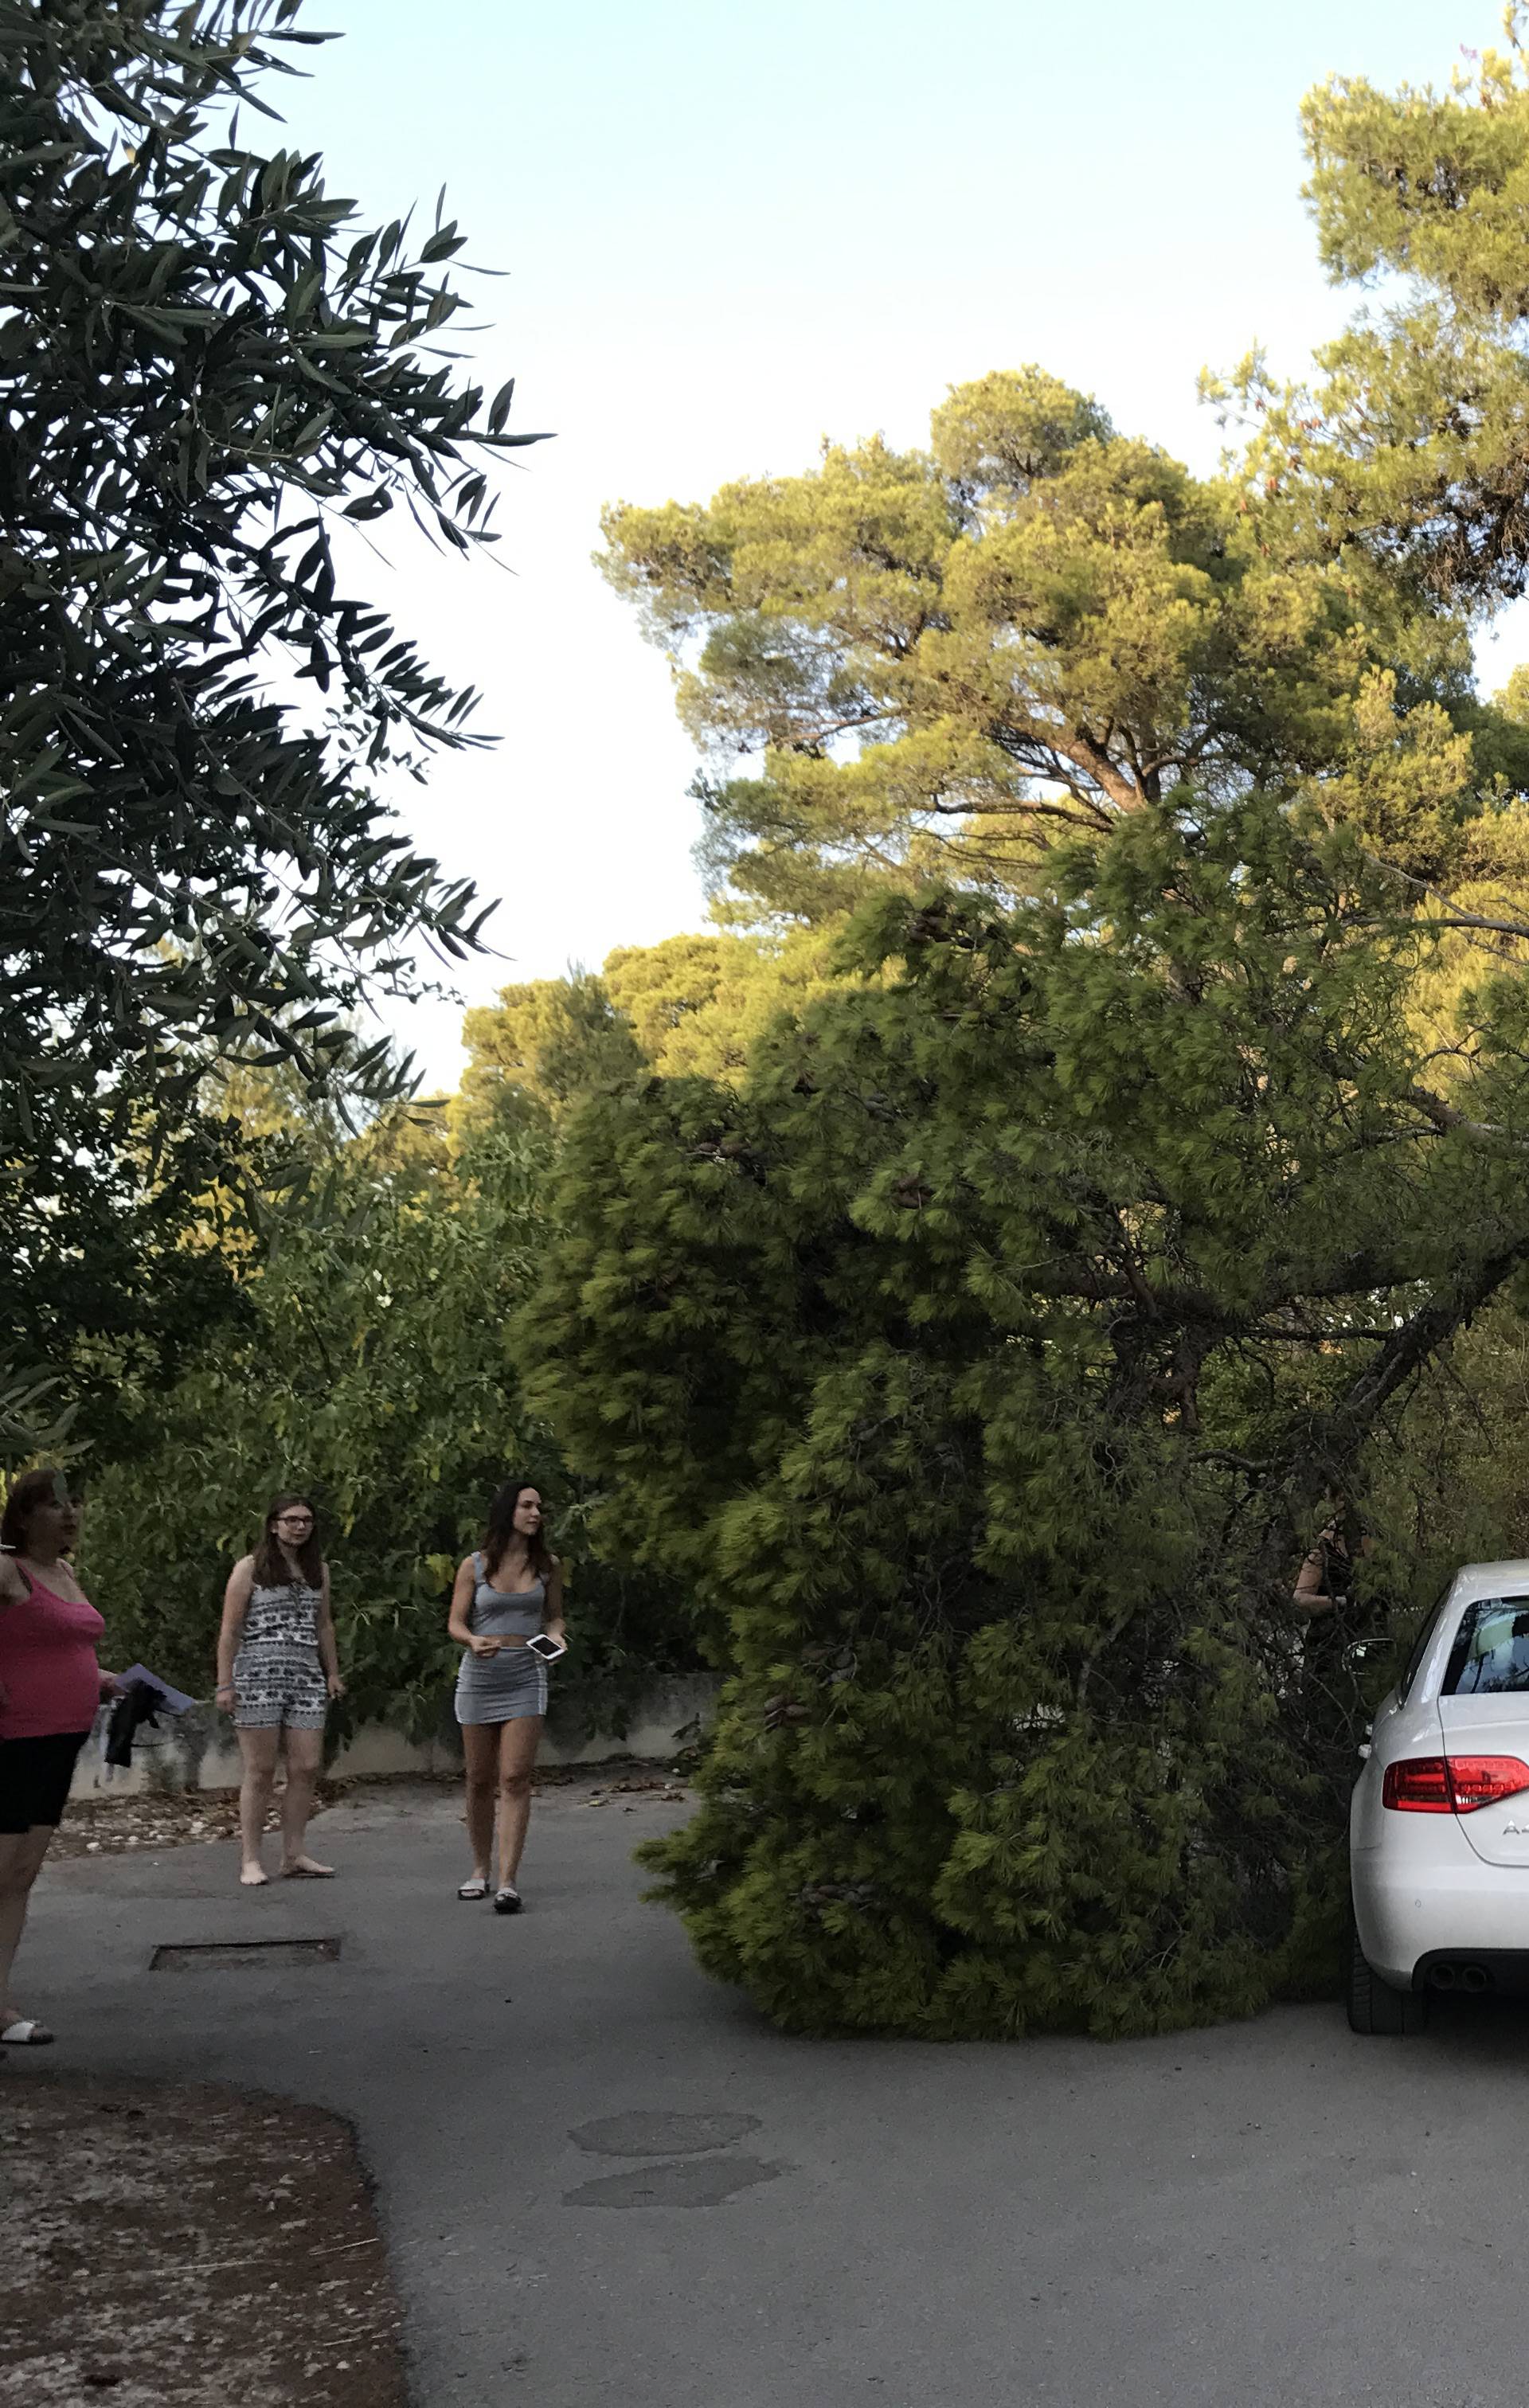 Lana doživjela nezgodu: Drvo palo na njezin auto u Biogradu